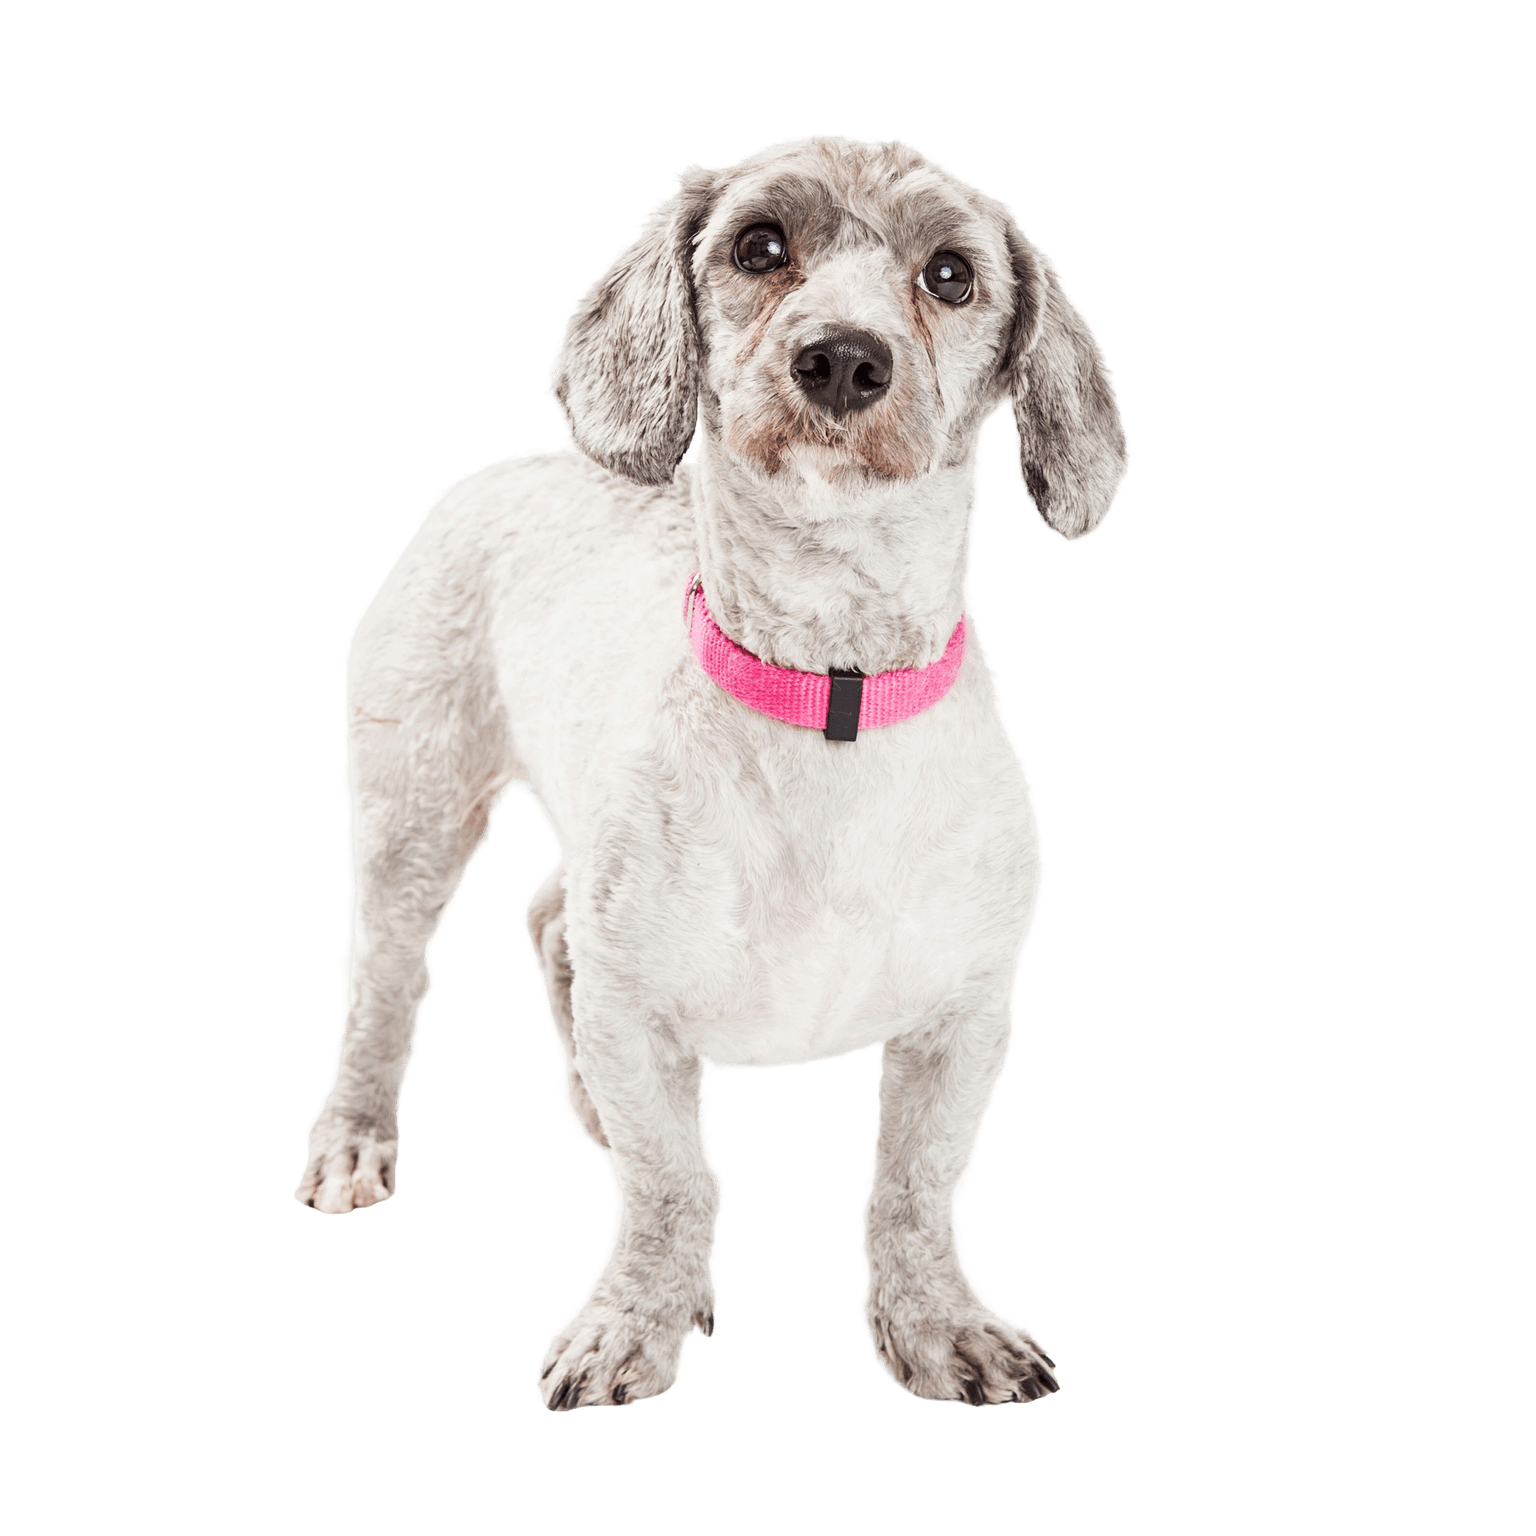 Doxiepoo Hund ist ein Mischling aus Pudel und Dachshund bzw. Dackel